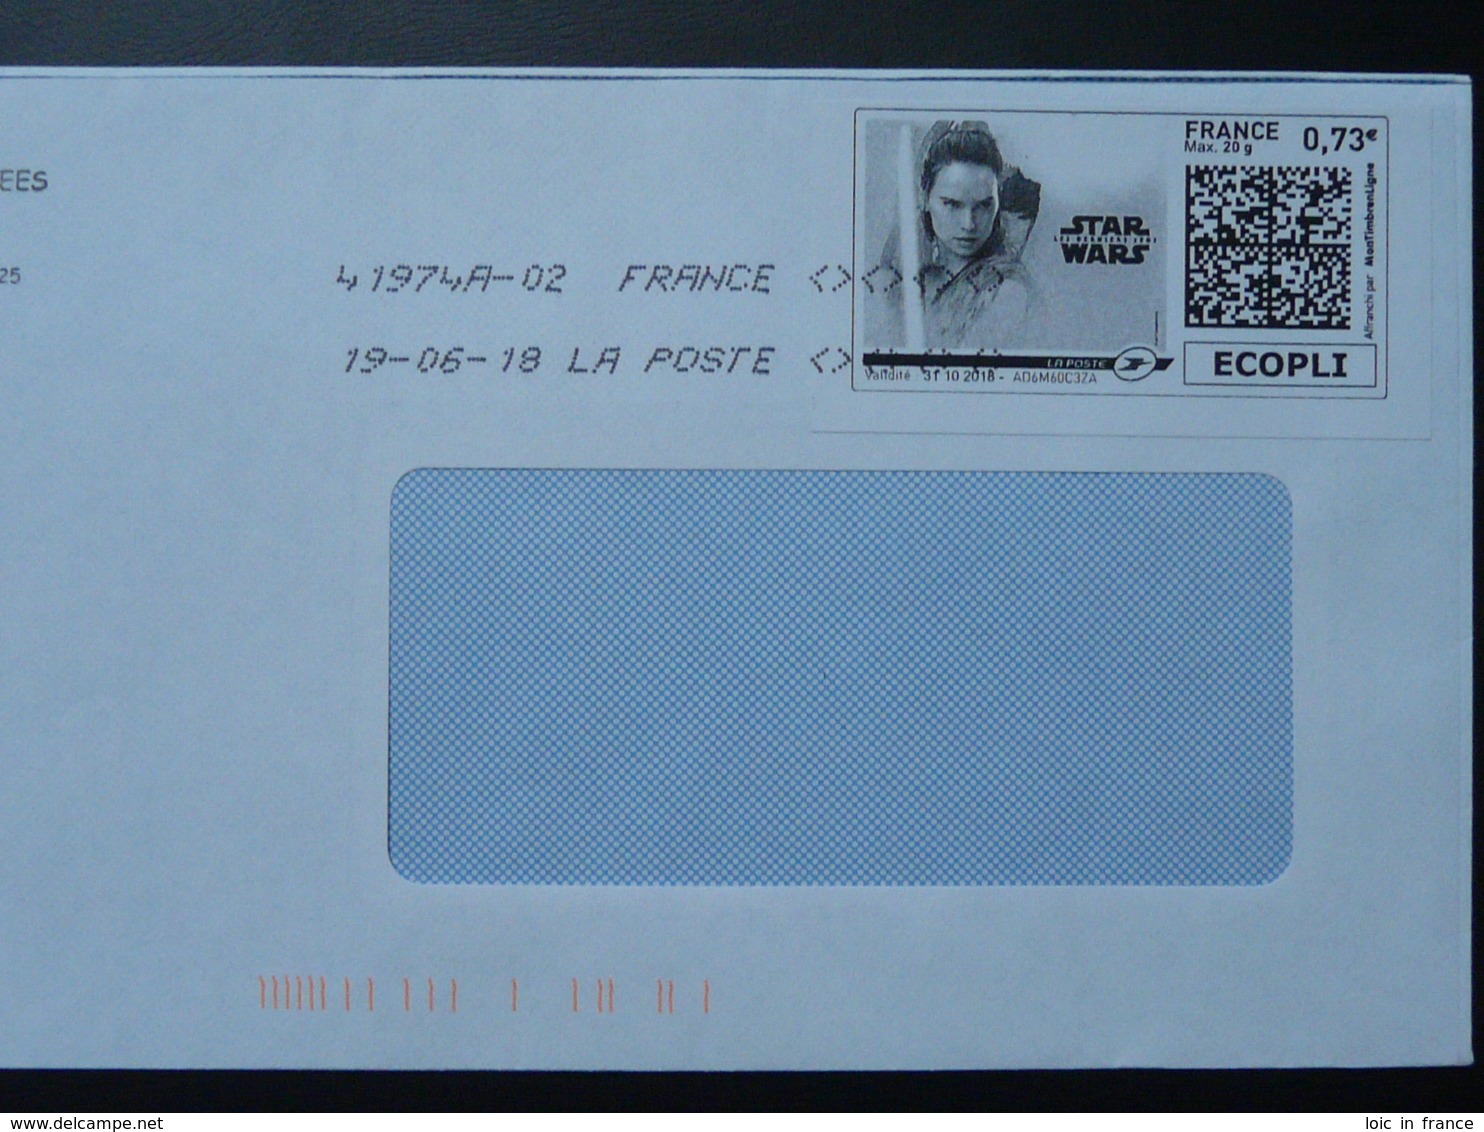 Film Star Wars Cinema Timbre En Ligne Sur Lettre (e-stamp On Cover) TPP 4122 - Cinéma